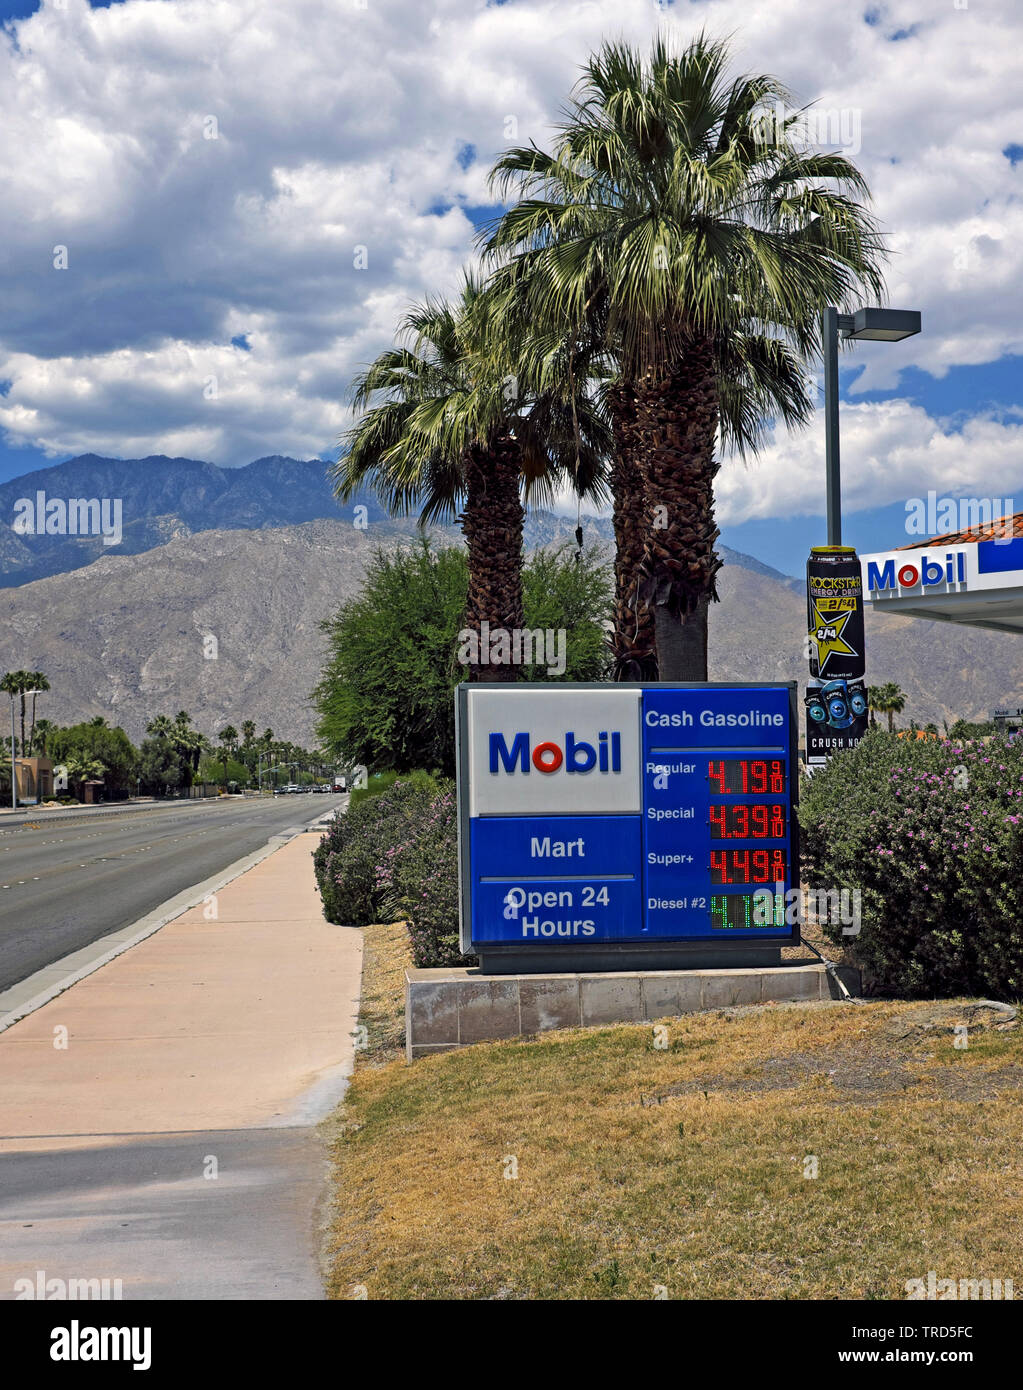 Stazione di servizio Mobil aperta 24 ore su 24 e market con prezzi del gas firmato il 13 maggio 2019 a Palm Springs, California, Stati Uniti. Foto Stock